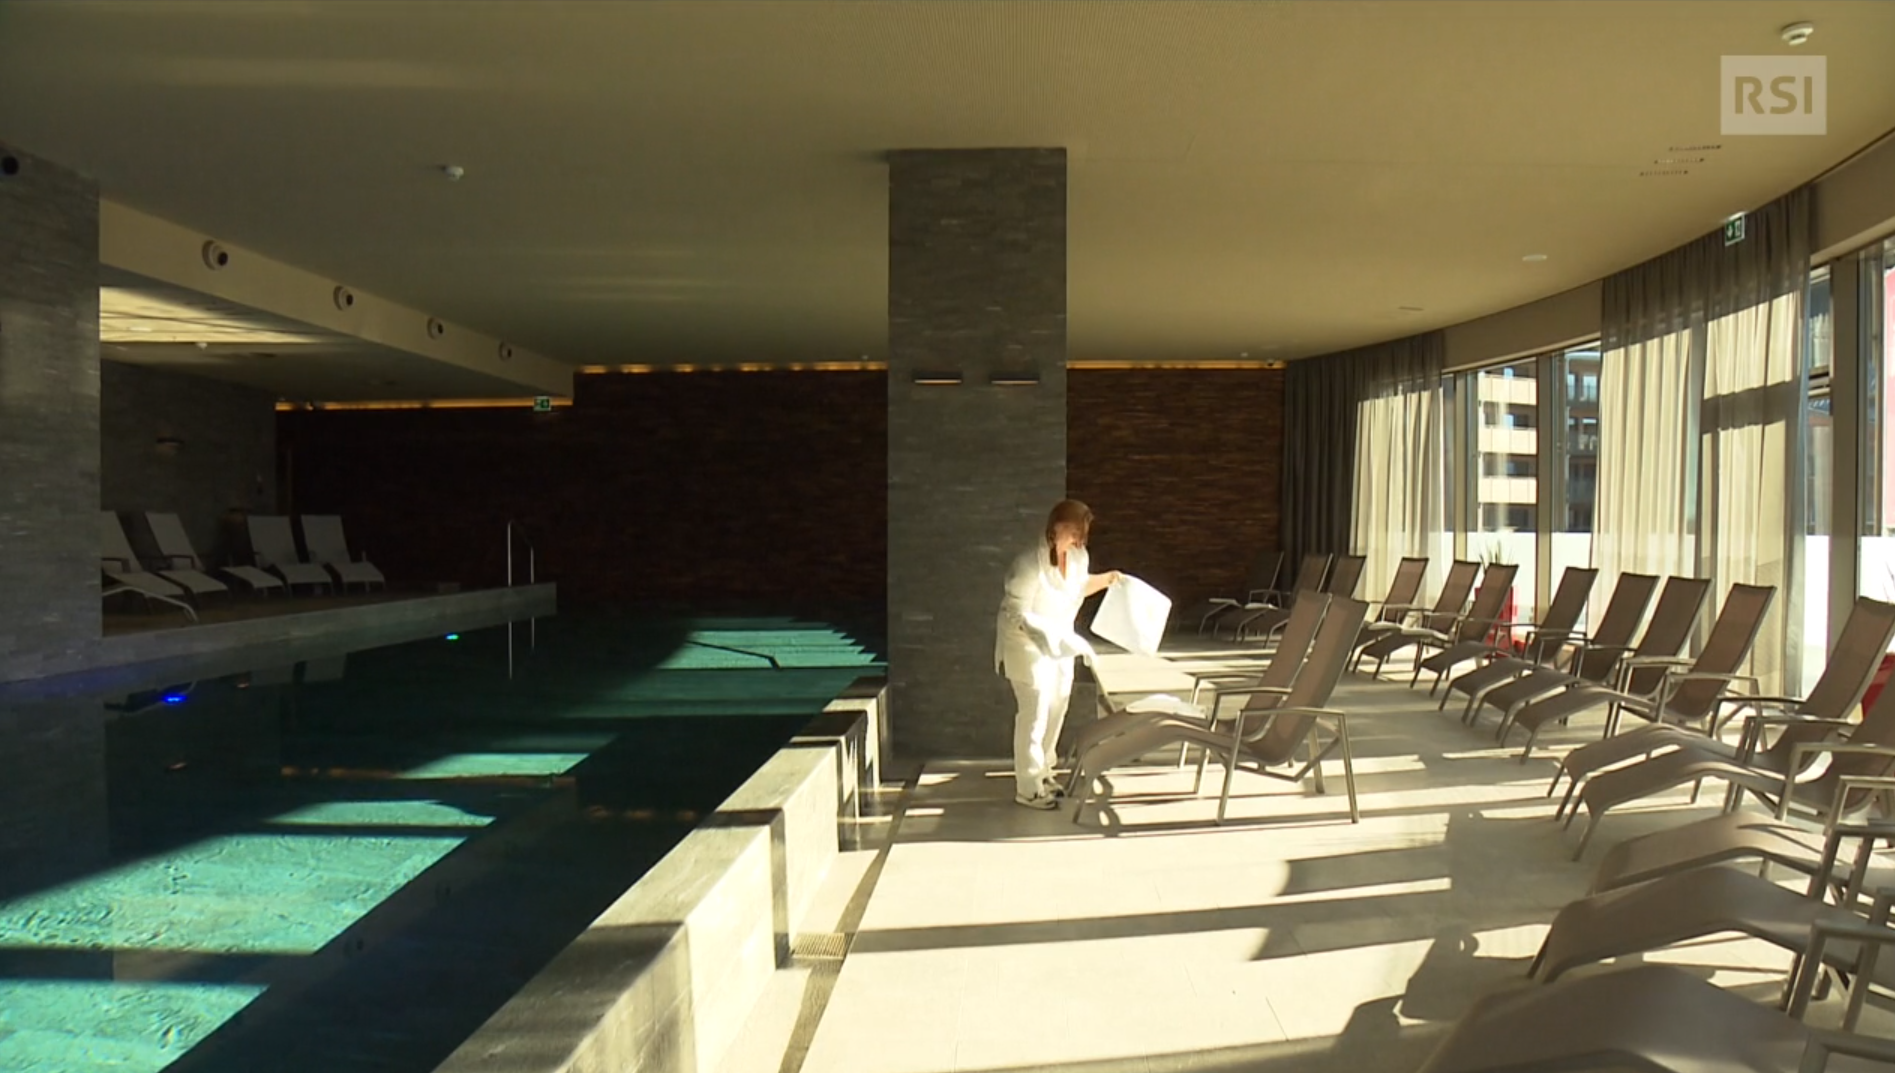 Interno di una piscina coperta; un inserviente sta posando un asciugamano su una chaise longue